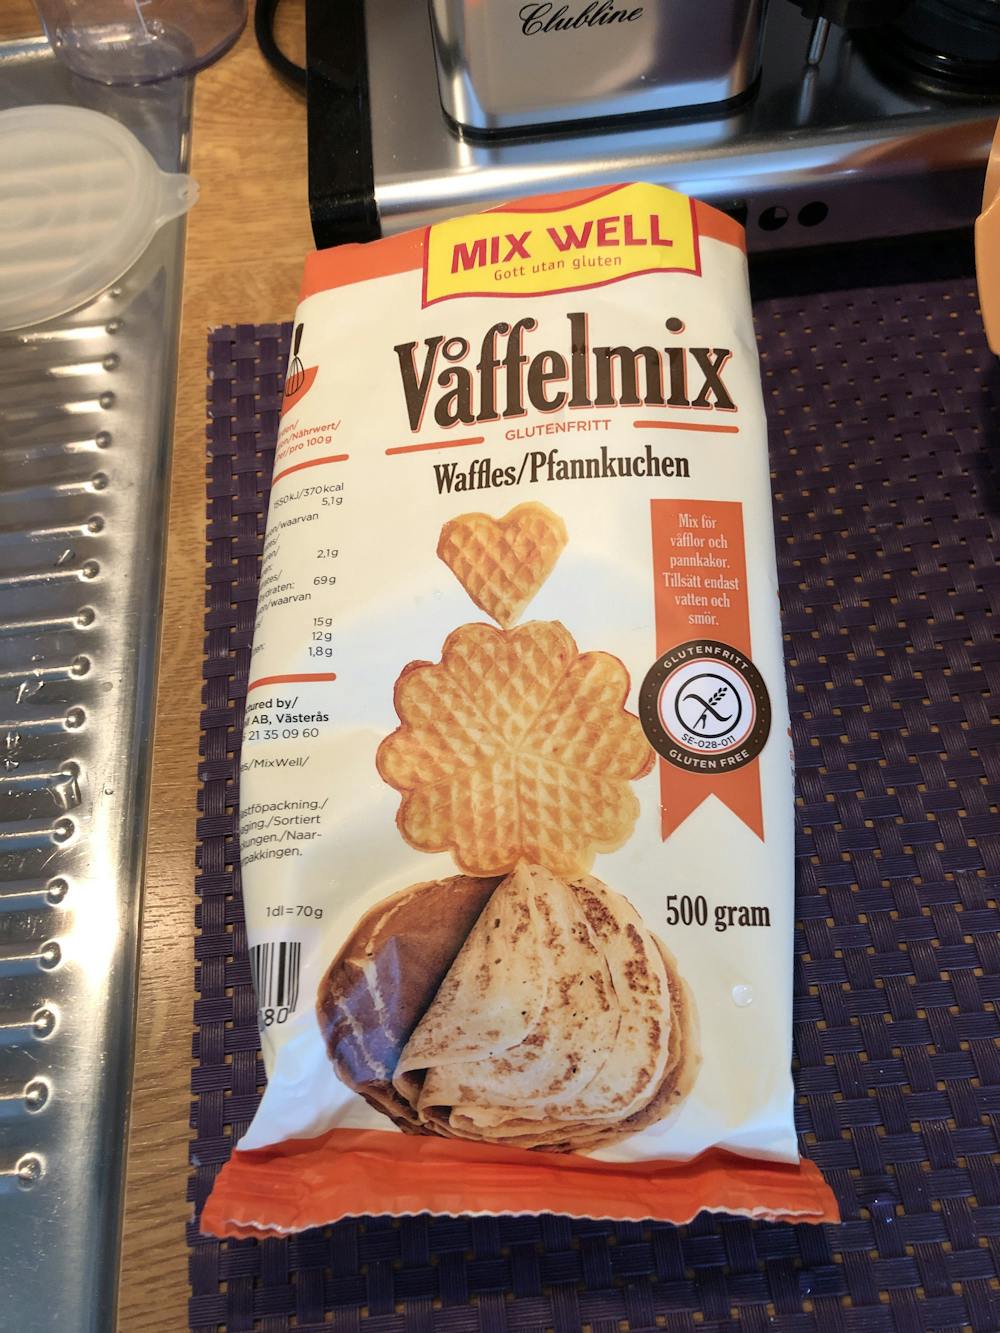 Våffelmix, Mix well